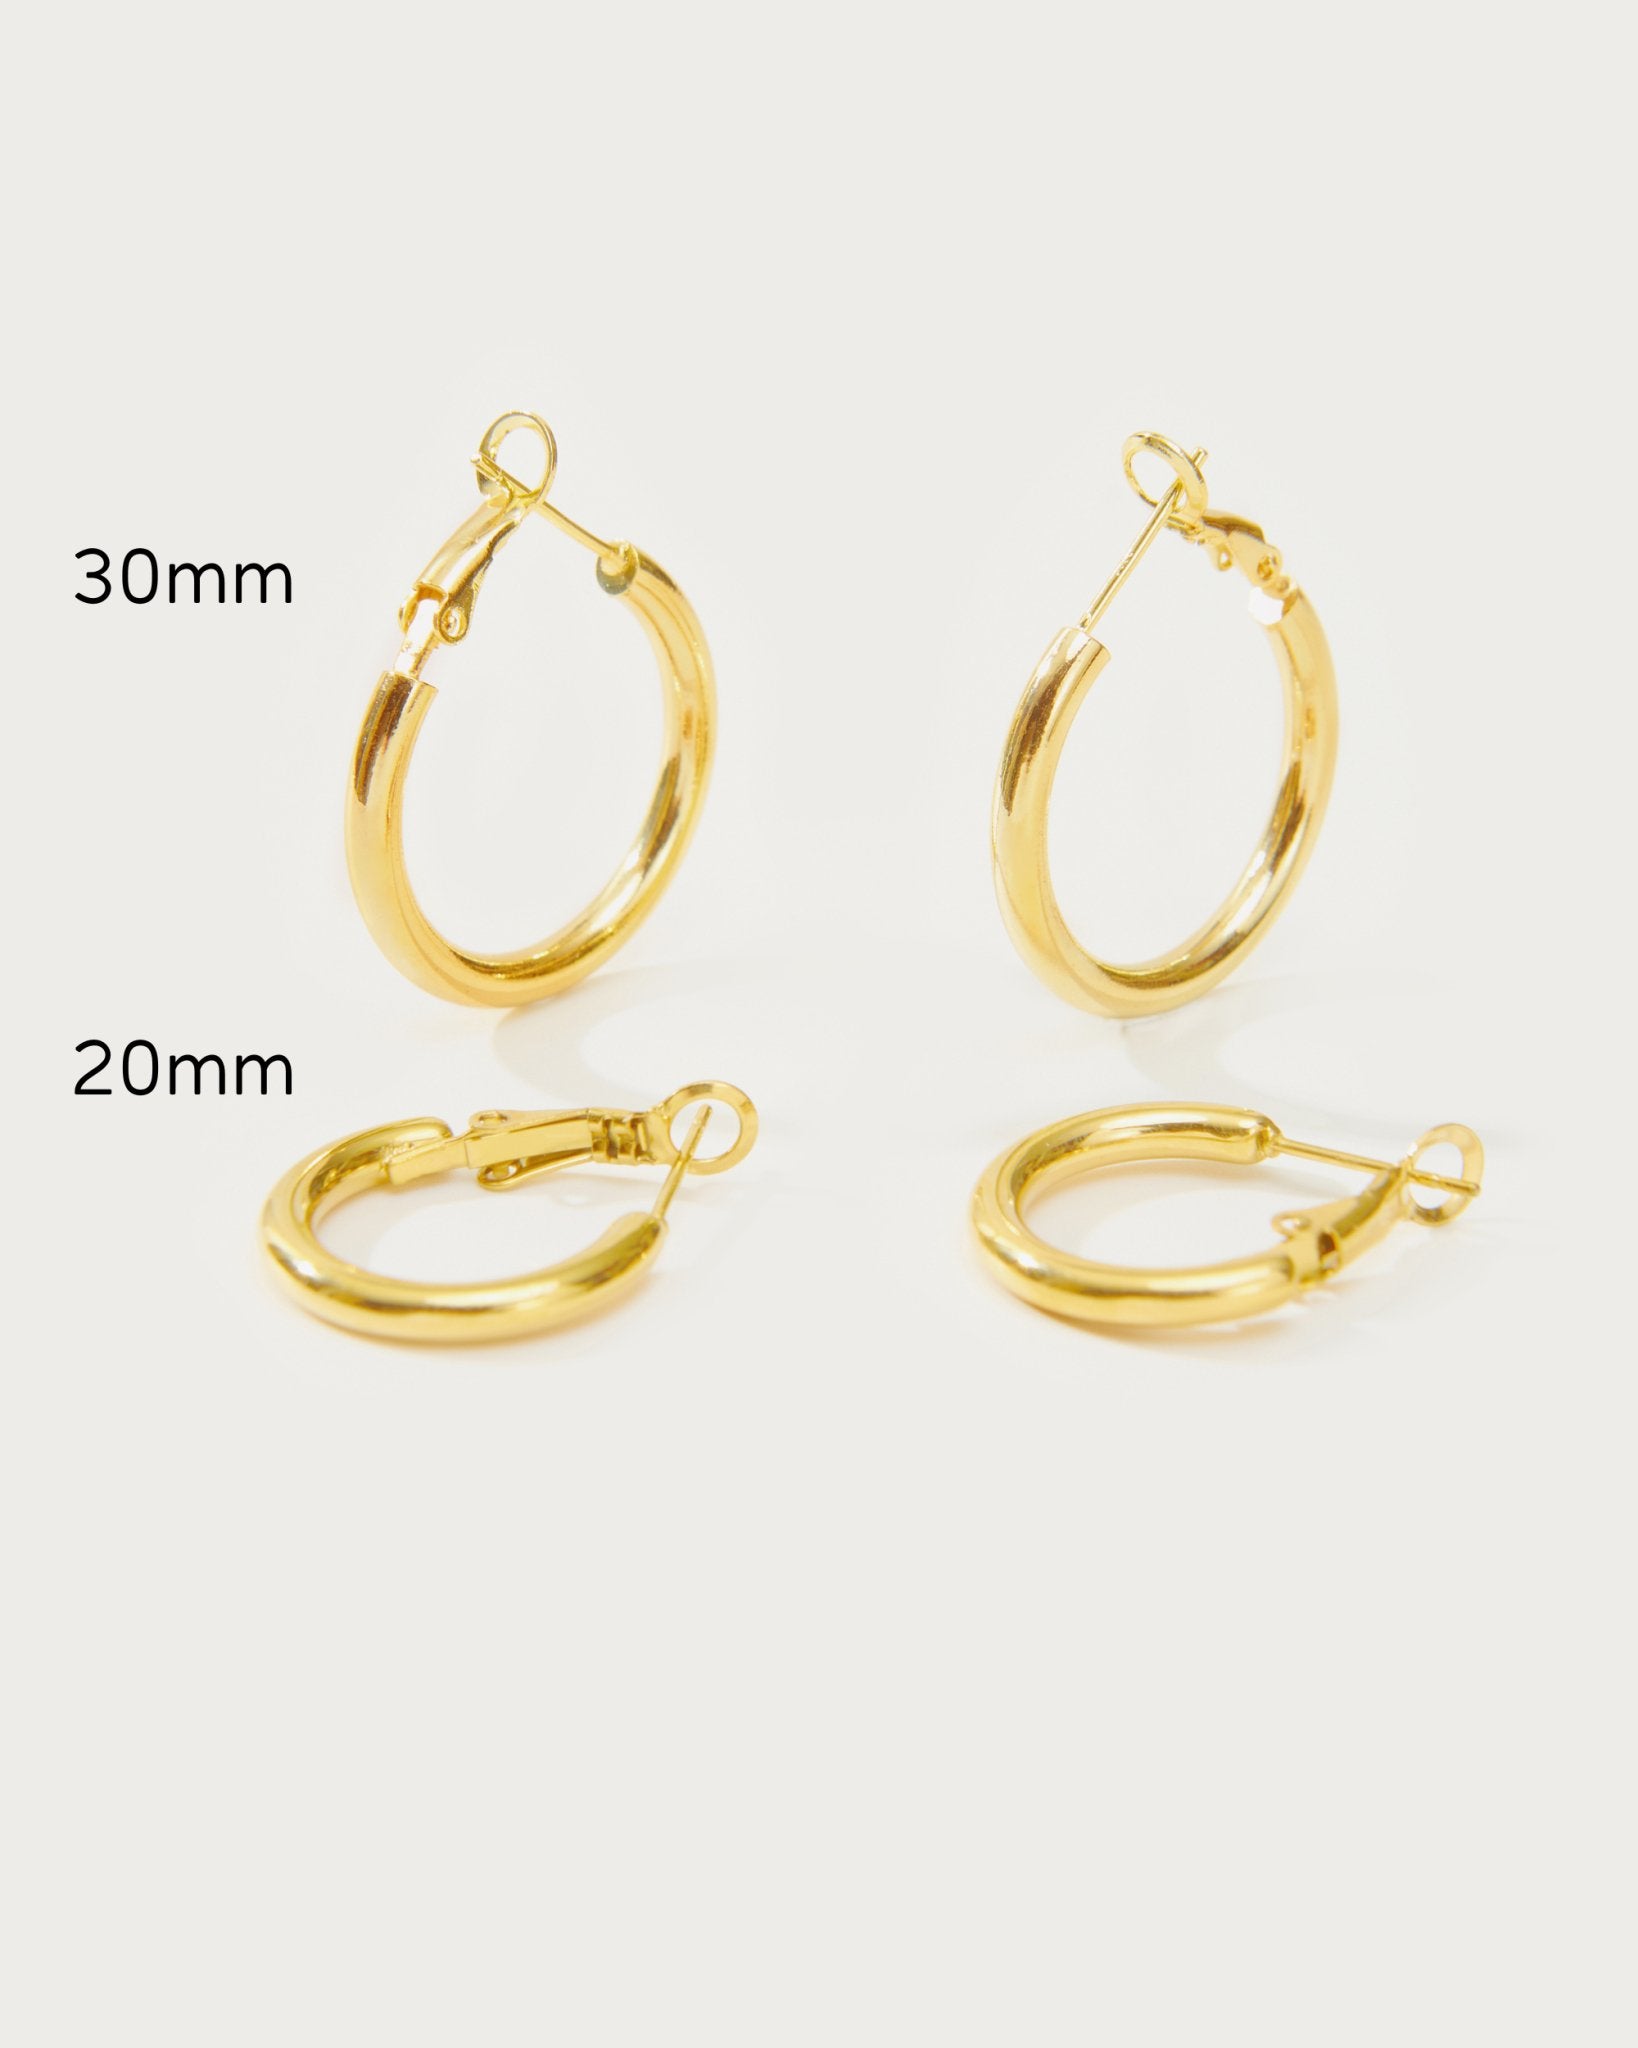 Gold 30mm Endless Hoop Earrings